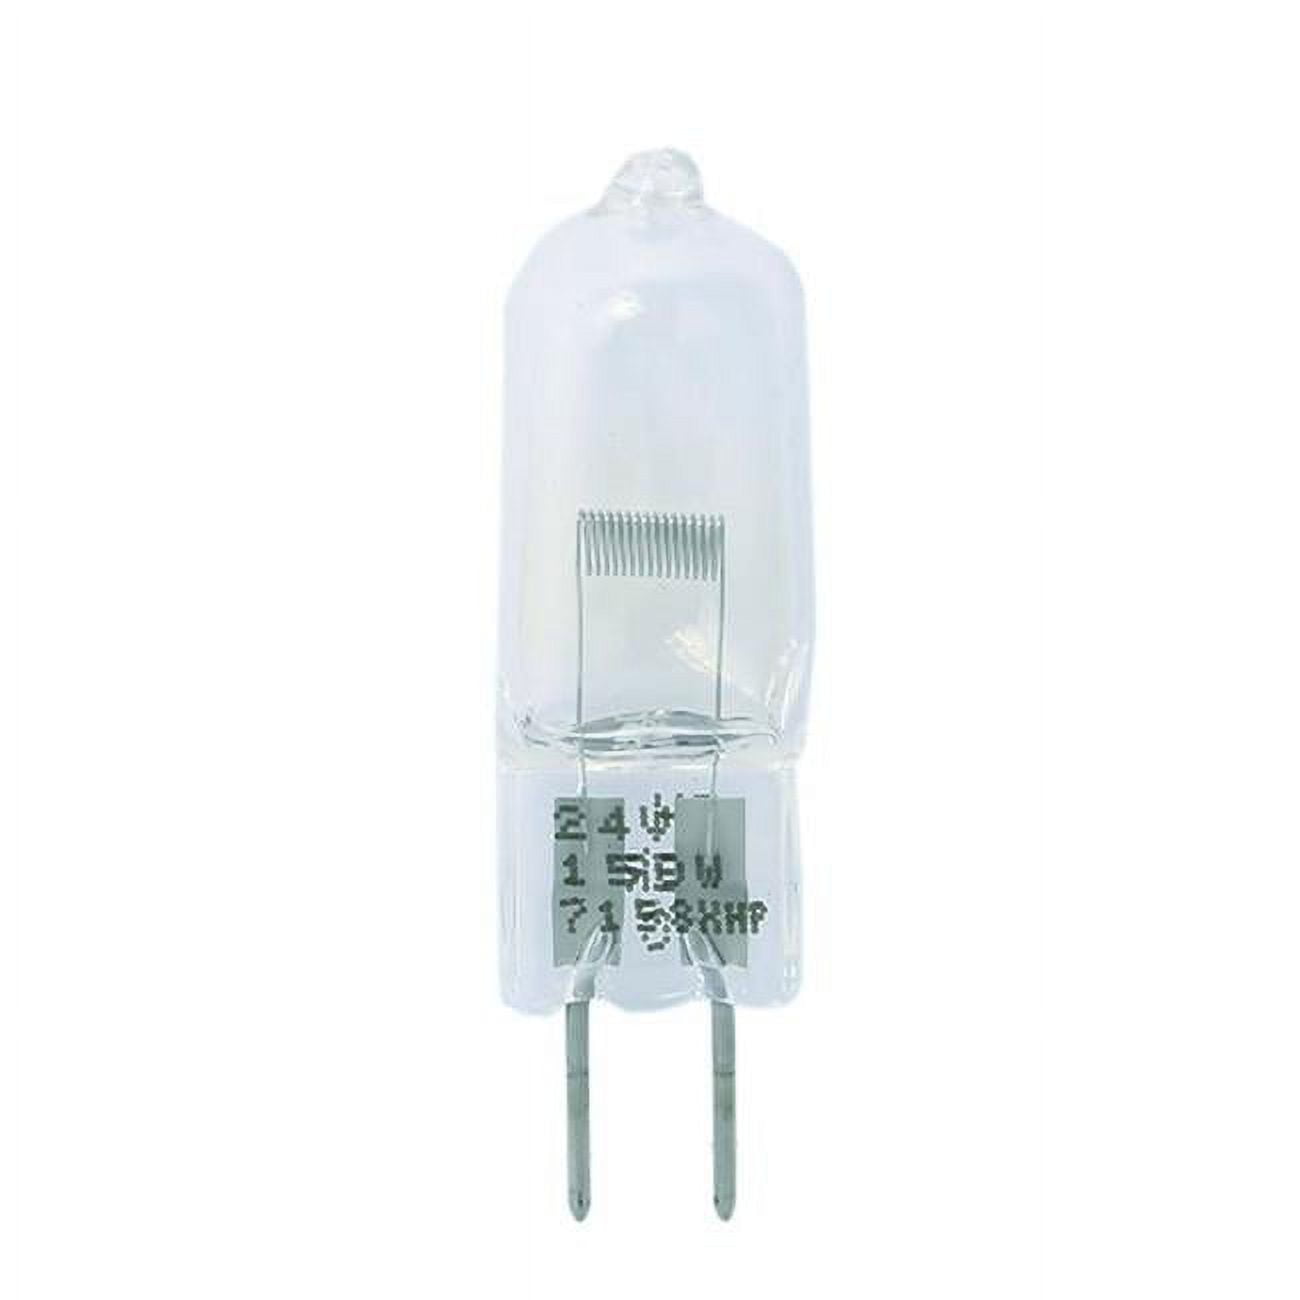 Dny-170208 Halogen Non-reflector 7158xhp 150w G6.35 24v Light Bulb